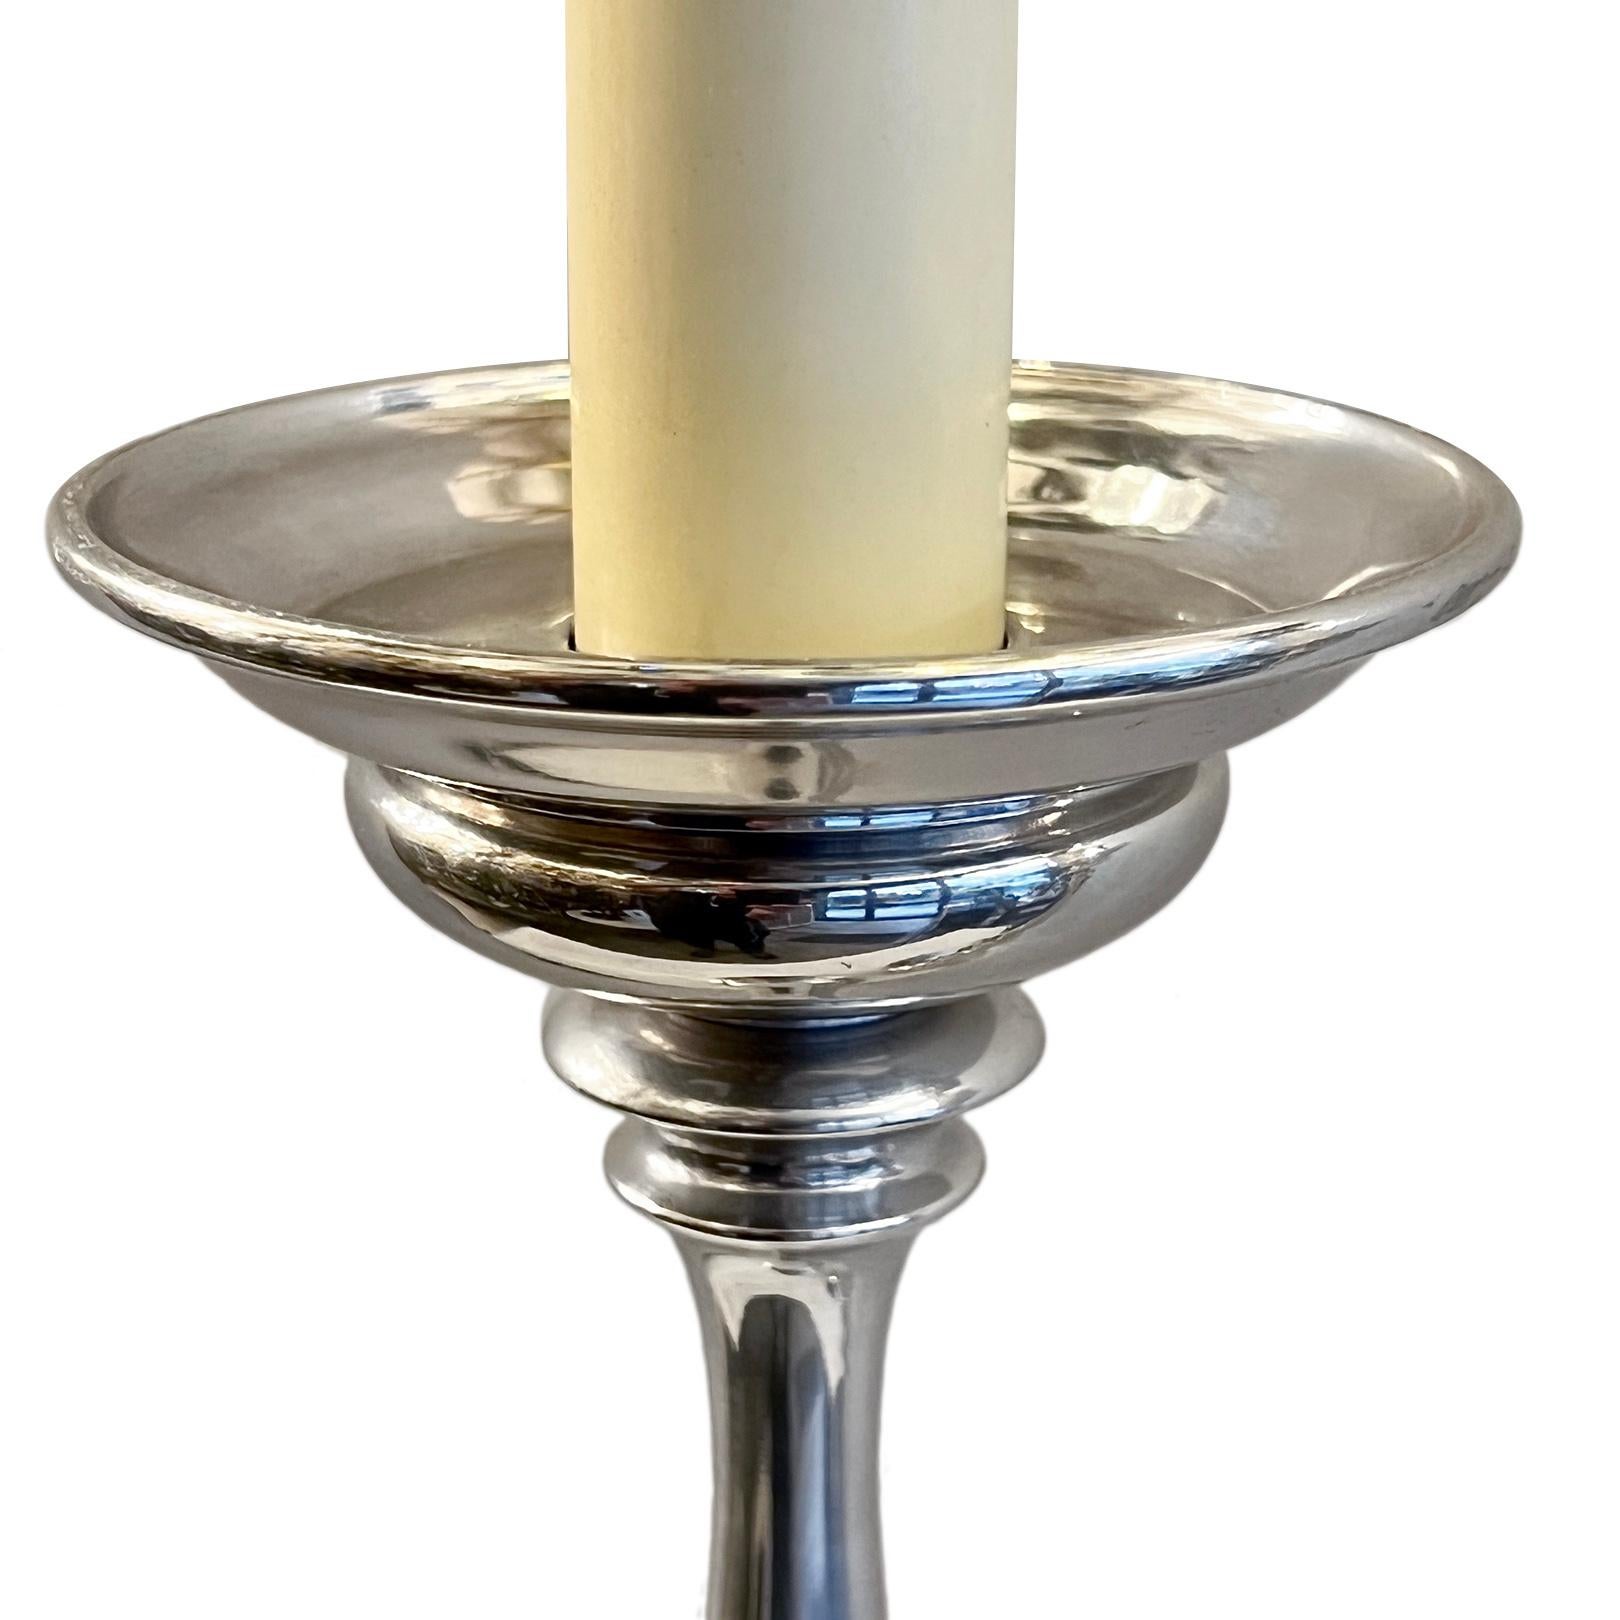 Paire de lampes chandeliers anglaises en métal argenté des années 1960, avec patine d'origine.

Mesures :
Hauteur du corps : 22
Hauteur jusqu'au support de l'abat-jour : 32